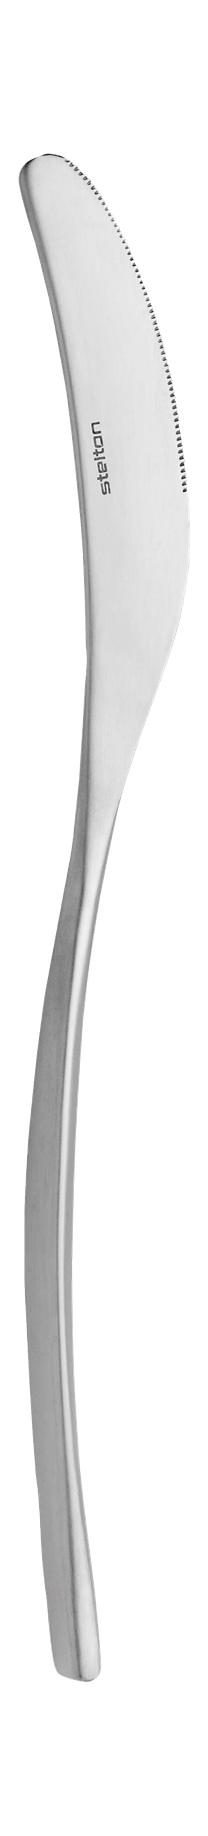 Stelton Capelano stolní nůž